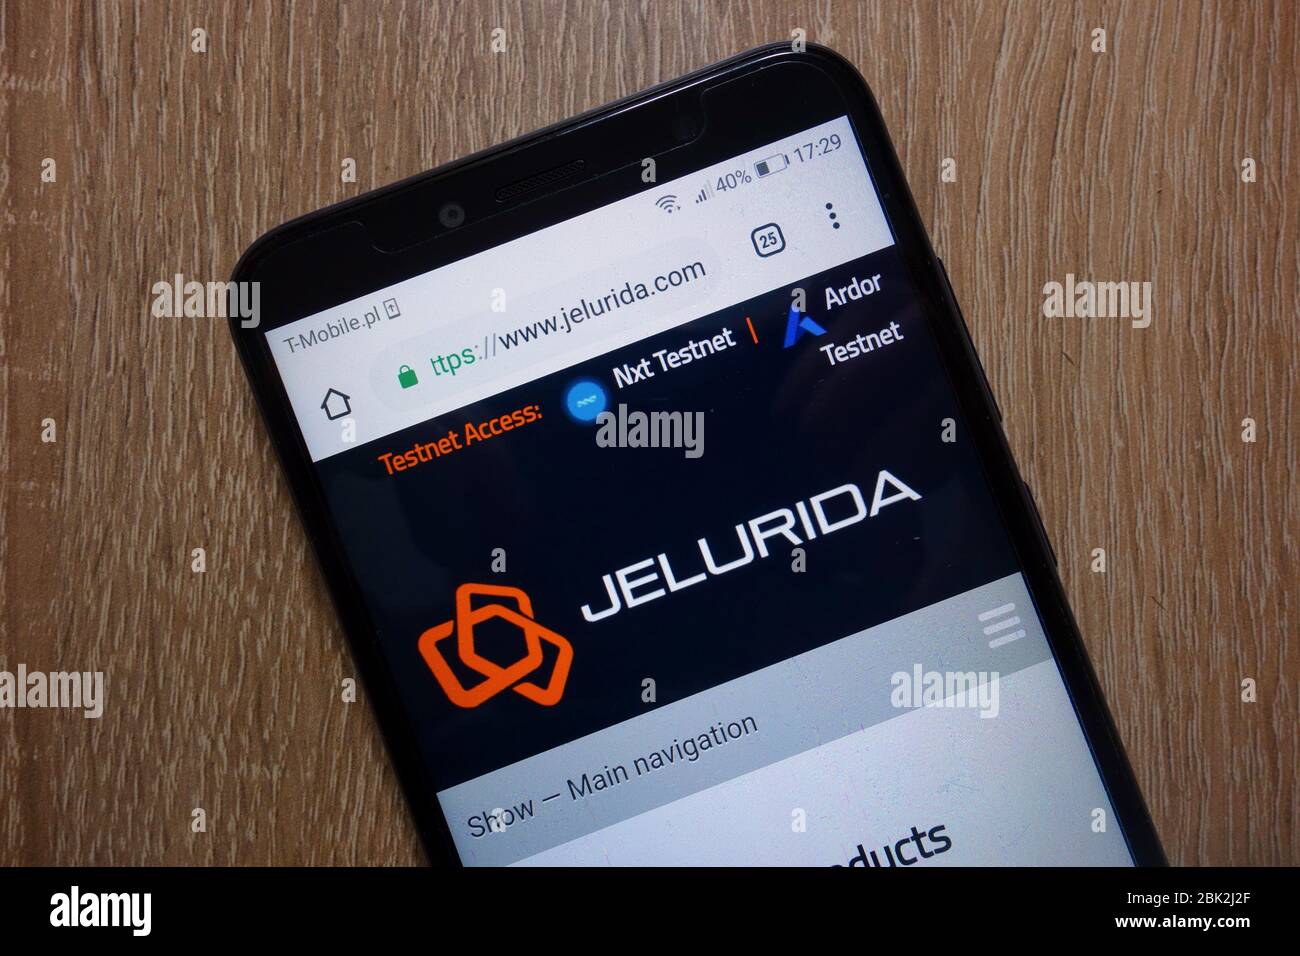 Jelurida website (www.jelurida.com) displayed on smartphone Stock Photo